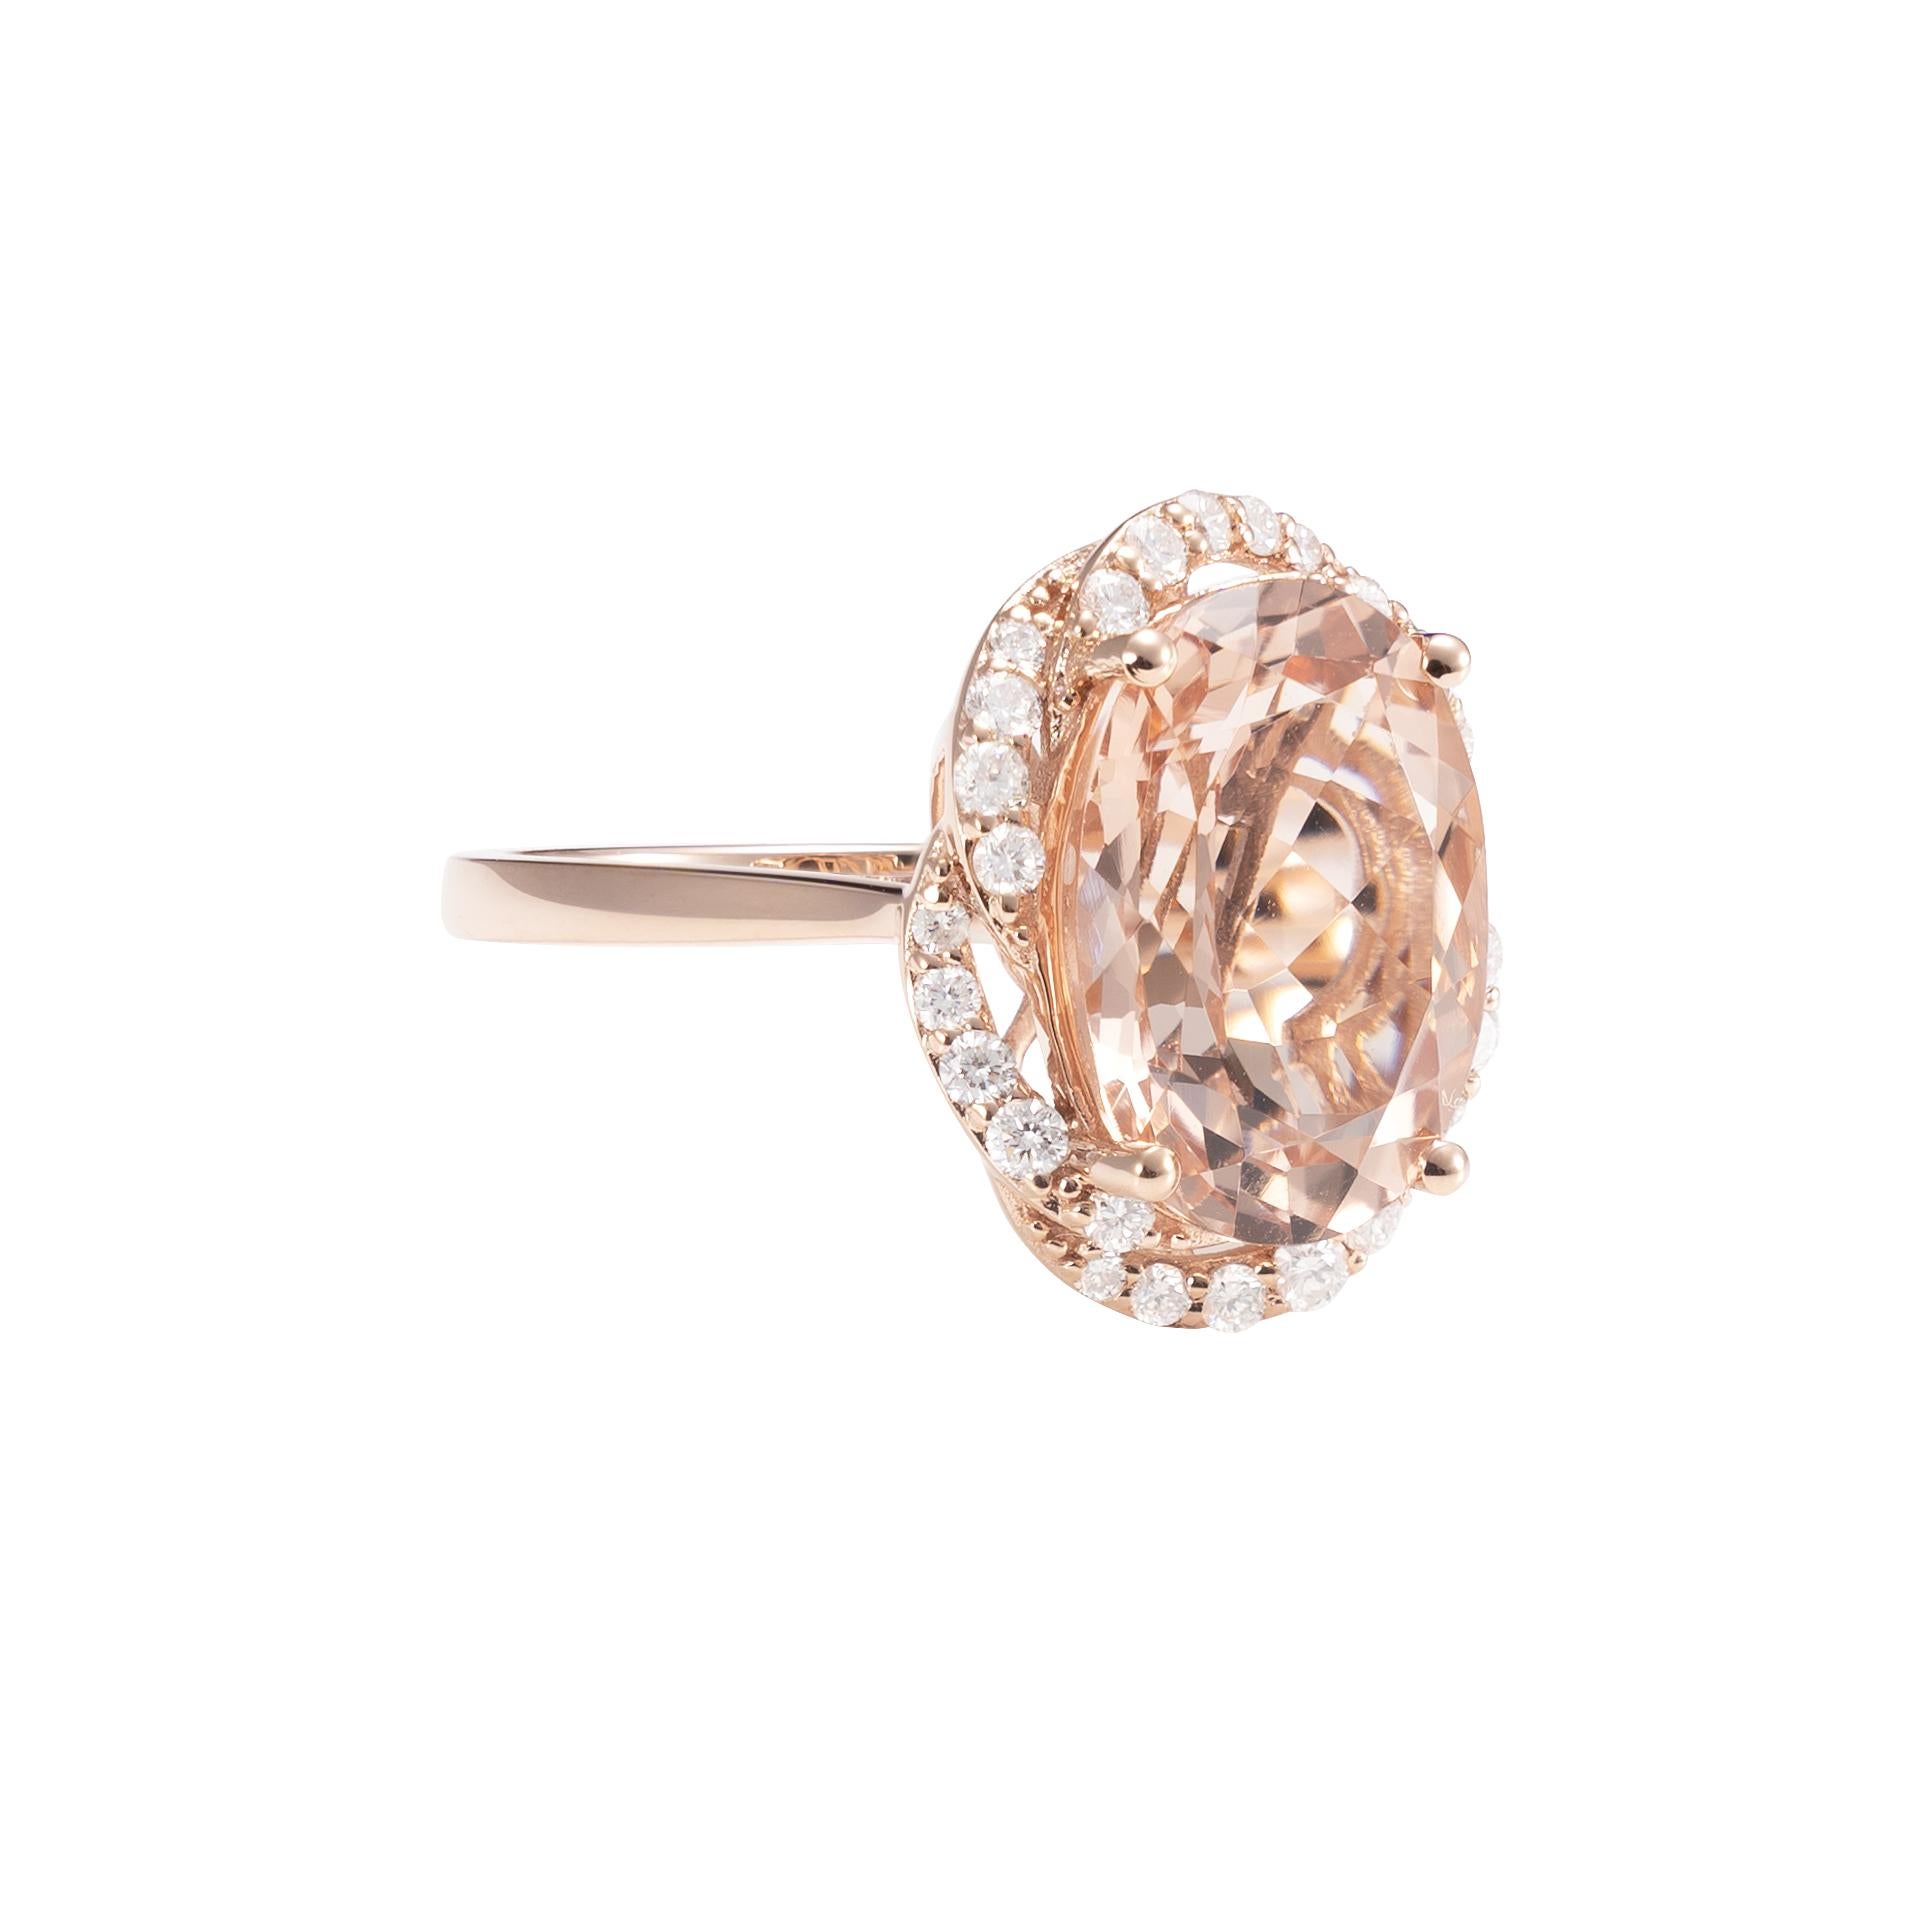 Diese Kollektion bietet eine Reihe von prächtigen Morganiten! Diese mit Diamanten besetzten Ringe sind aus Roségold gefertigt und wirken klassisch und elegant. 

Klassischer Morganit-Ring aus 18 Karat Roségold mit Diamanten. 

Morganit: 5,79 Karat